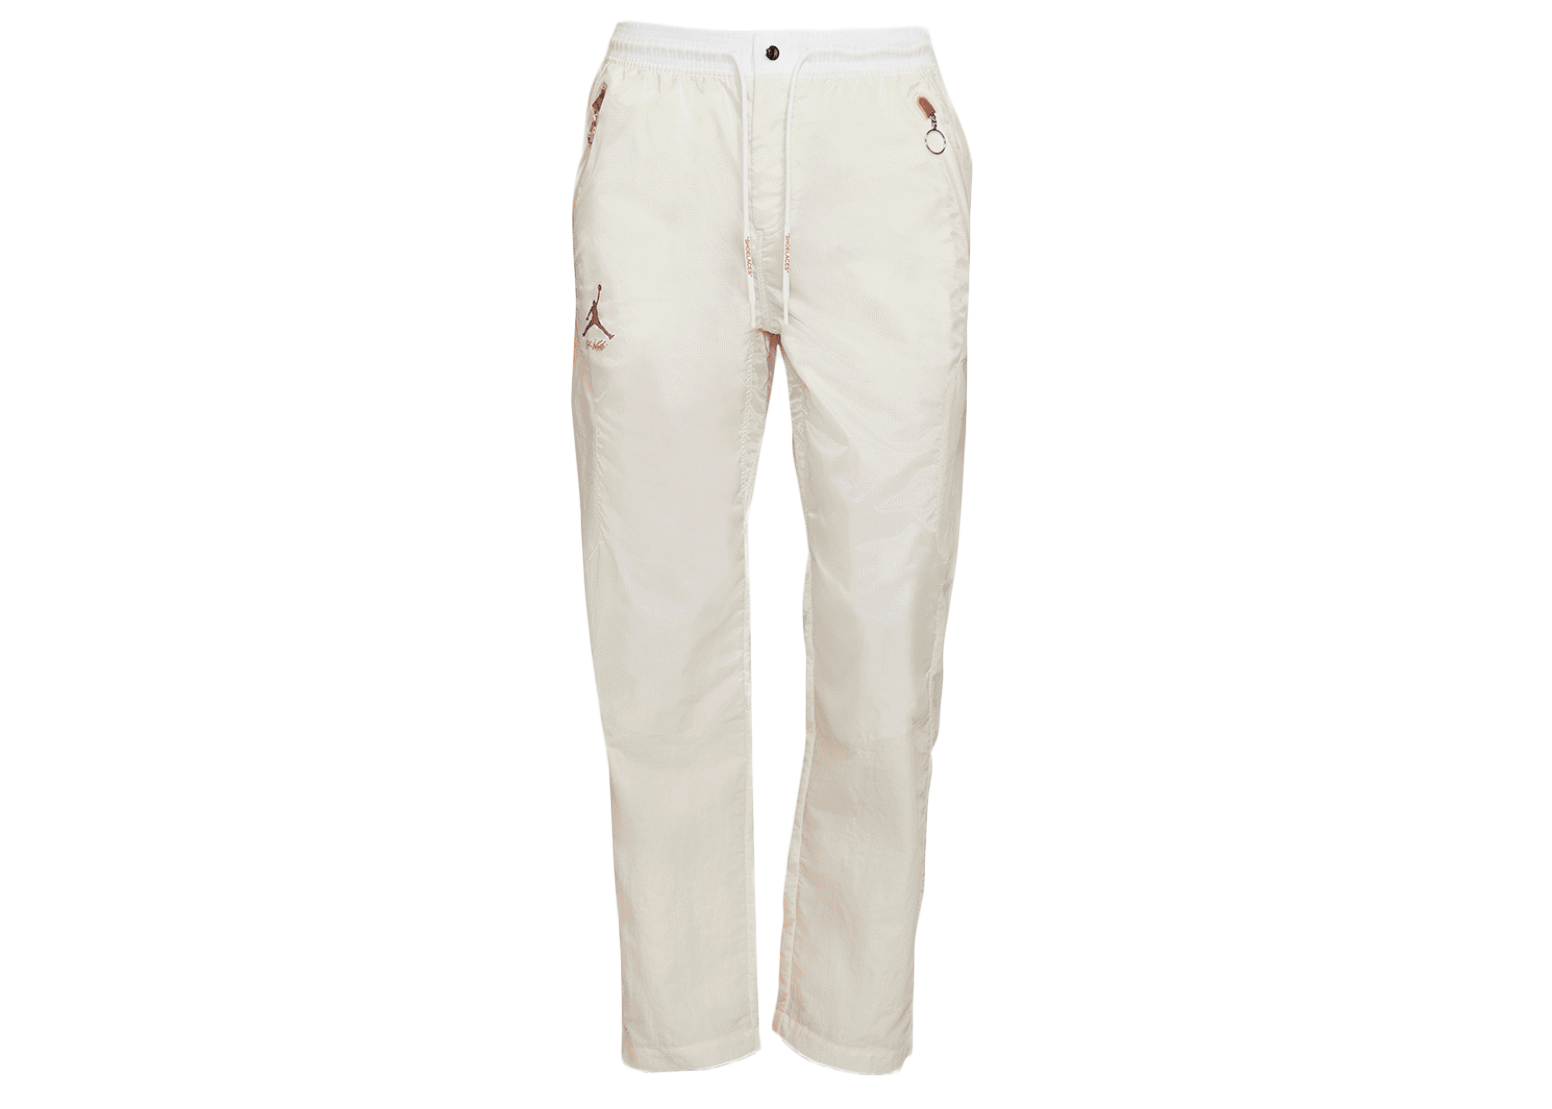 OFF-WHITE x Jordan Woven Pants White - SS21